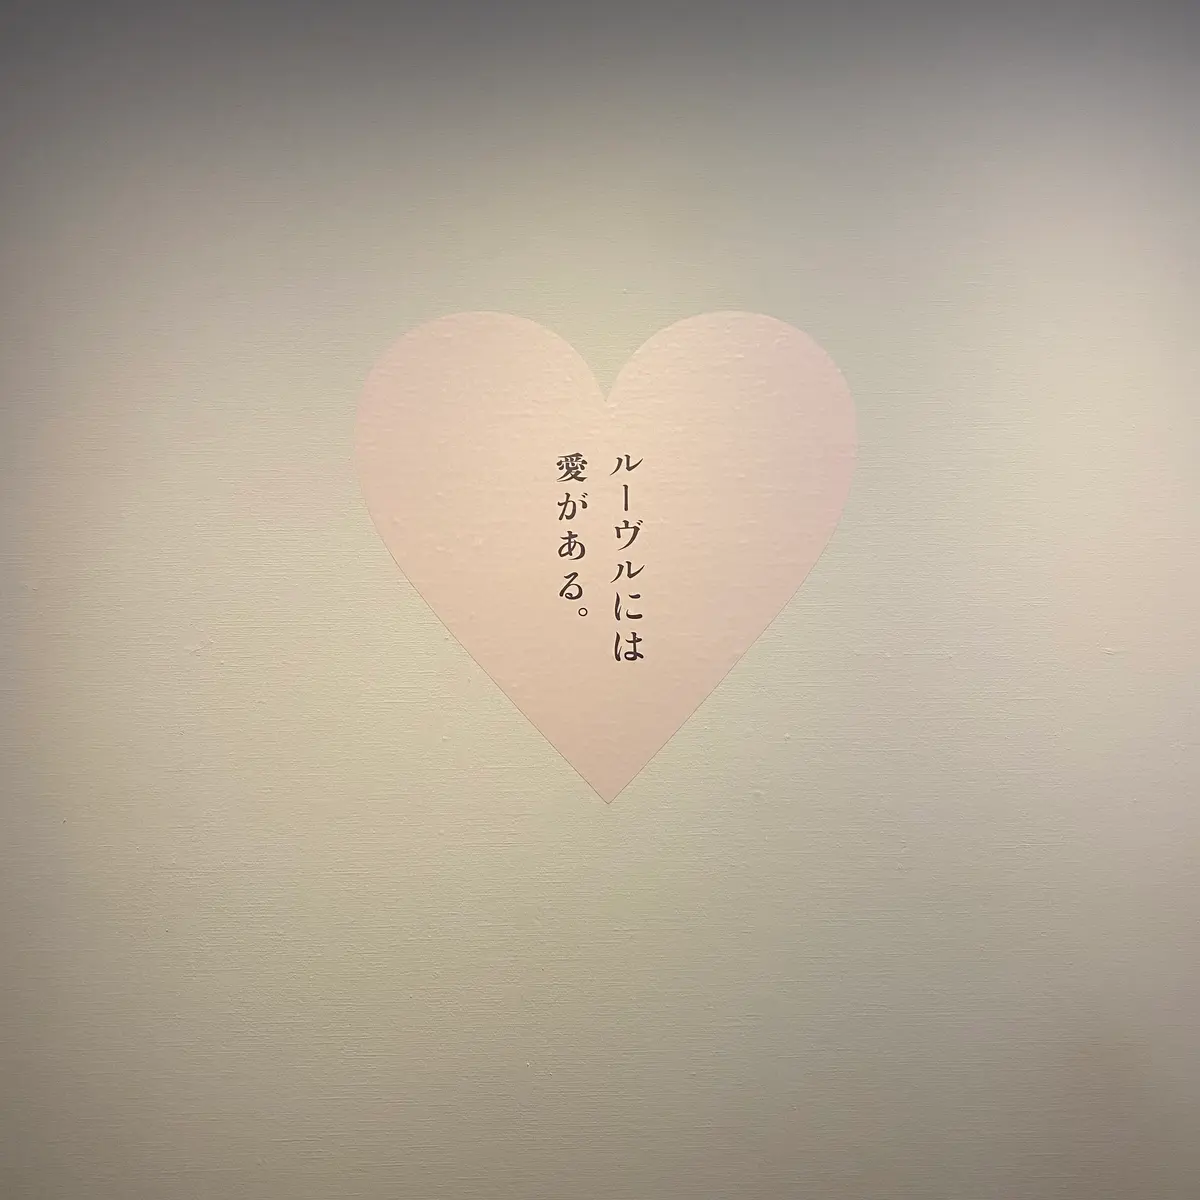 【美術館】愛が溢れるルーブル美術館展💘の画像_2